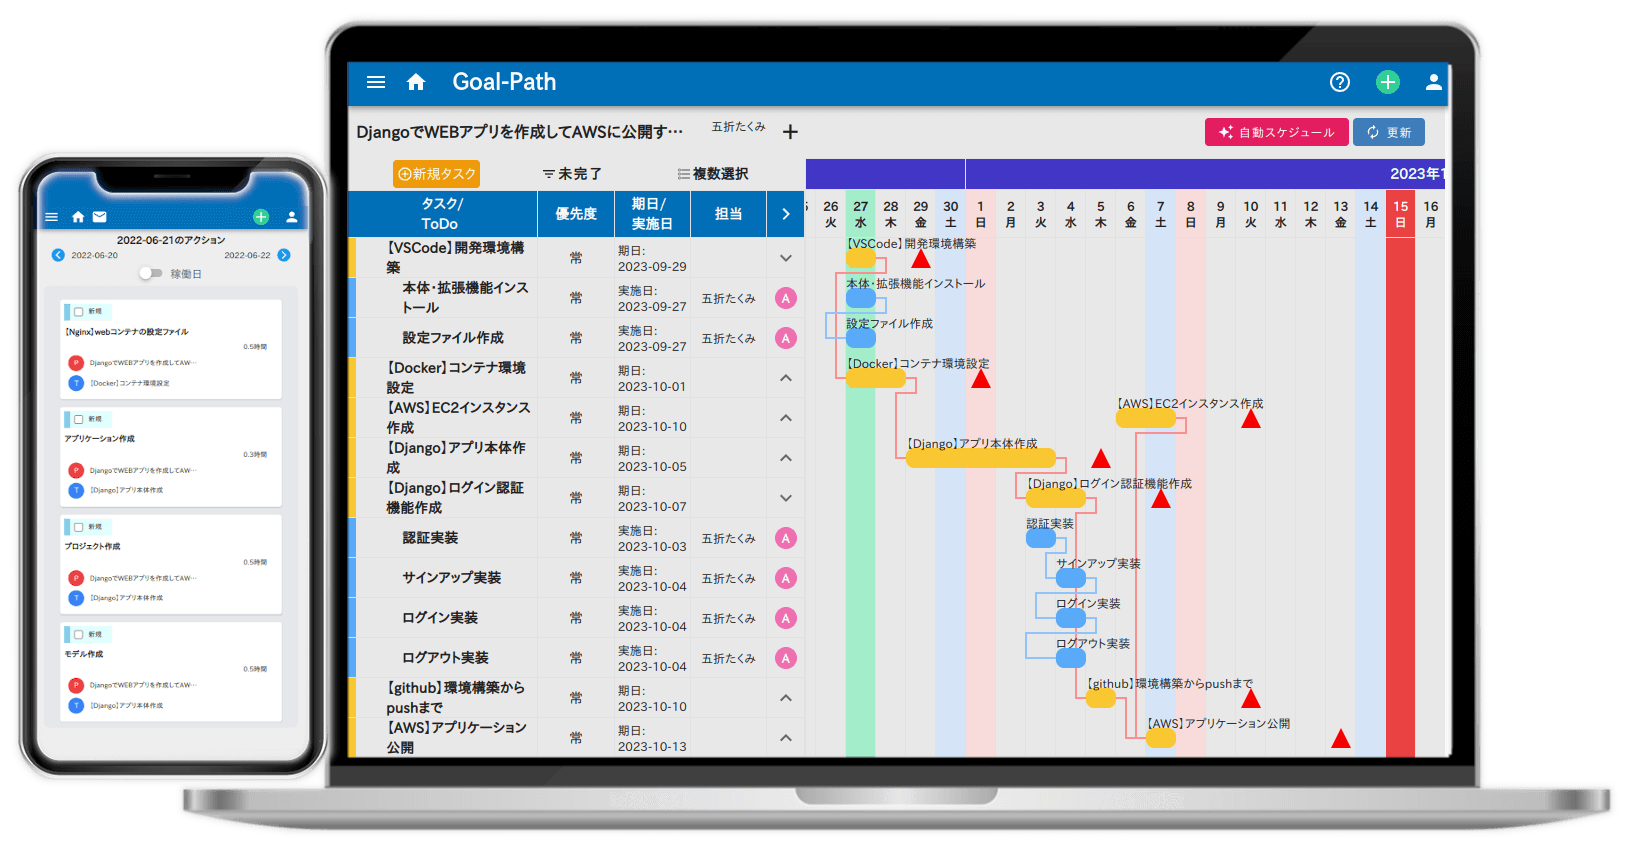 Goal-Path（ゴールパス）はガントチャートとToDoボードで学習計画を自動管理できます。